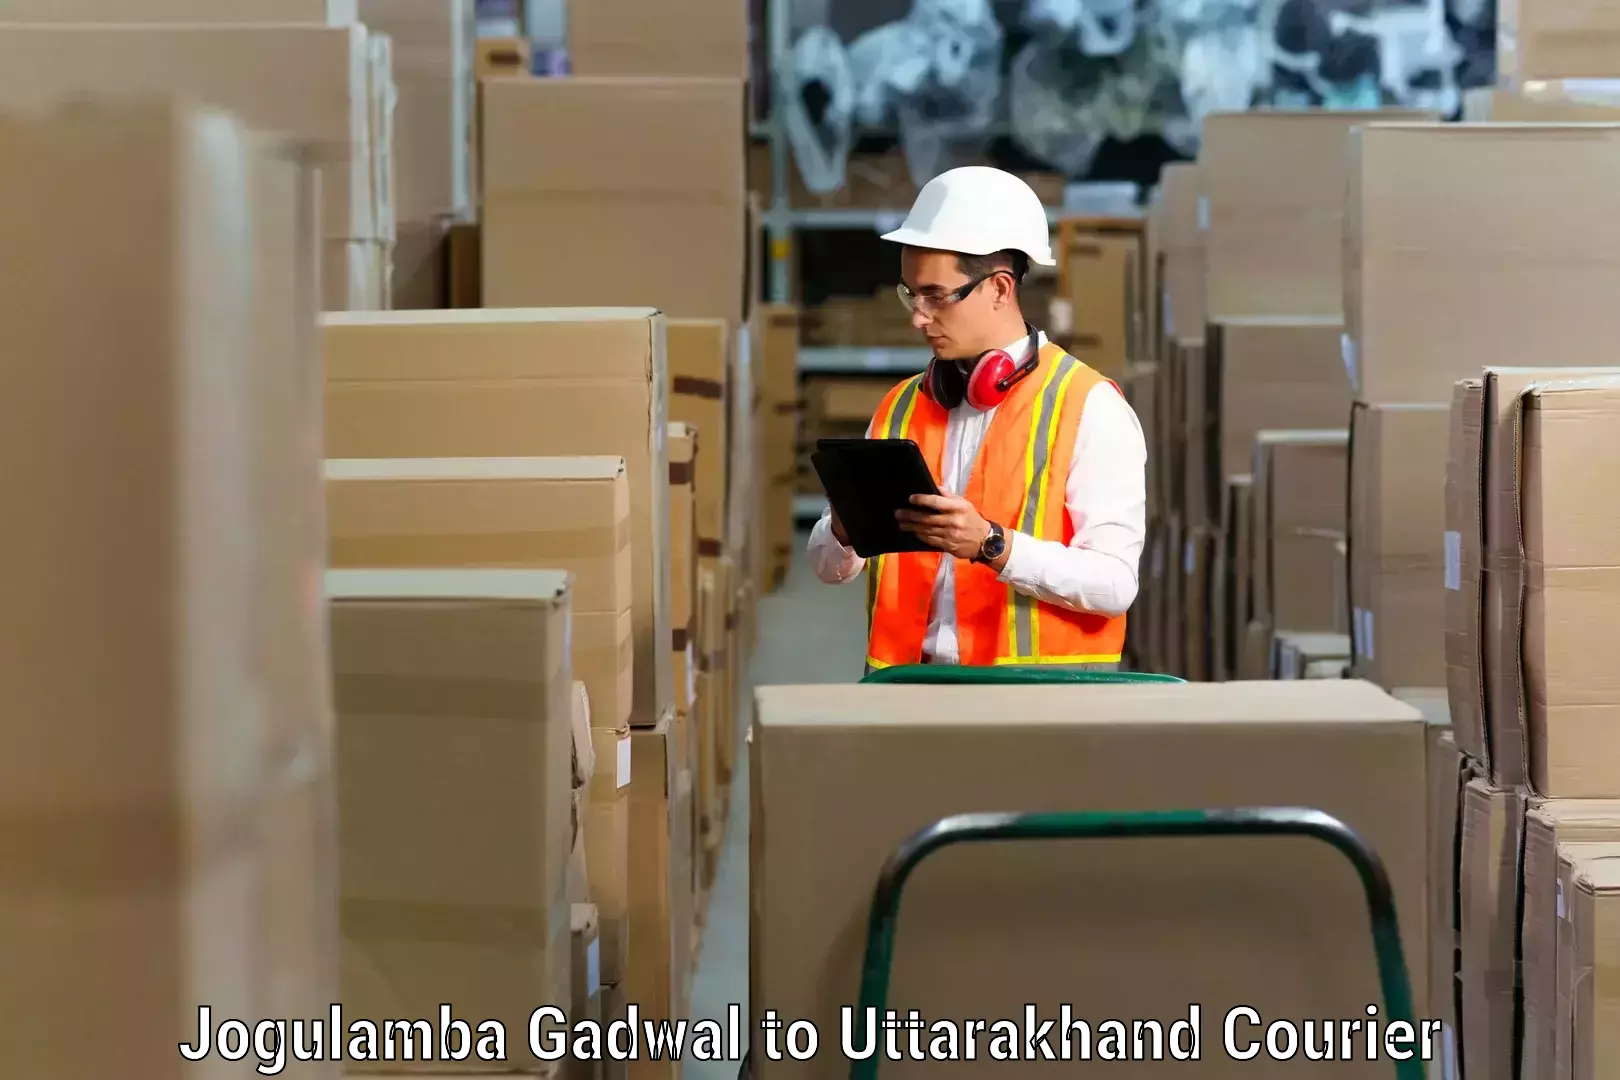 Moving and handling services Jogulamba Gadwal to Dehradun